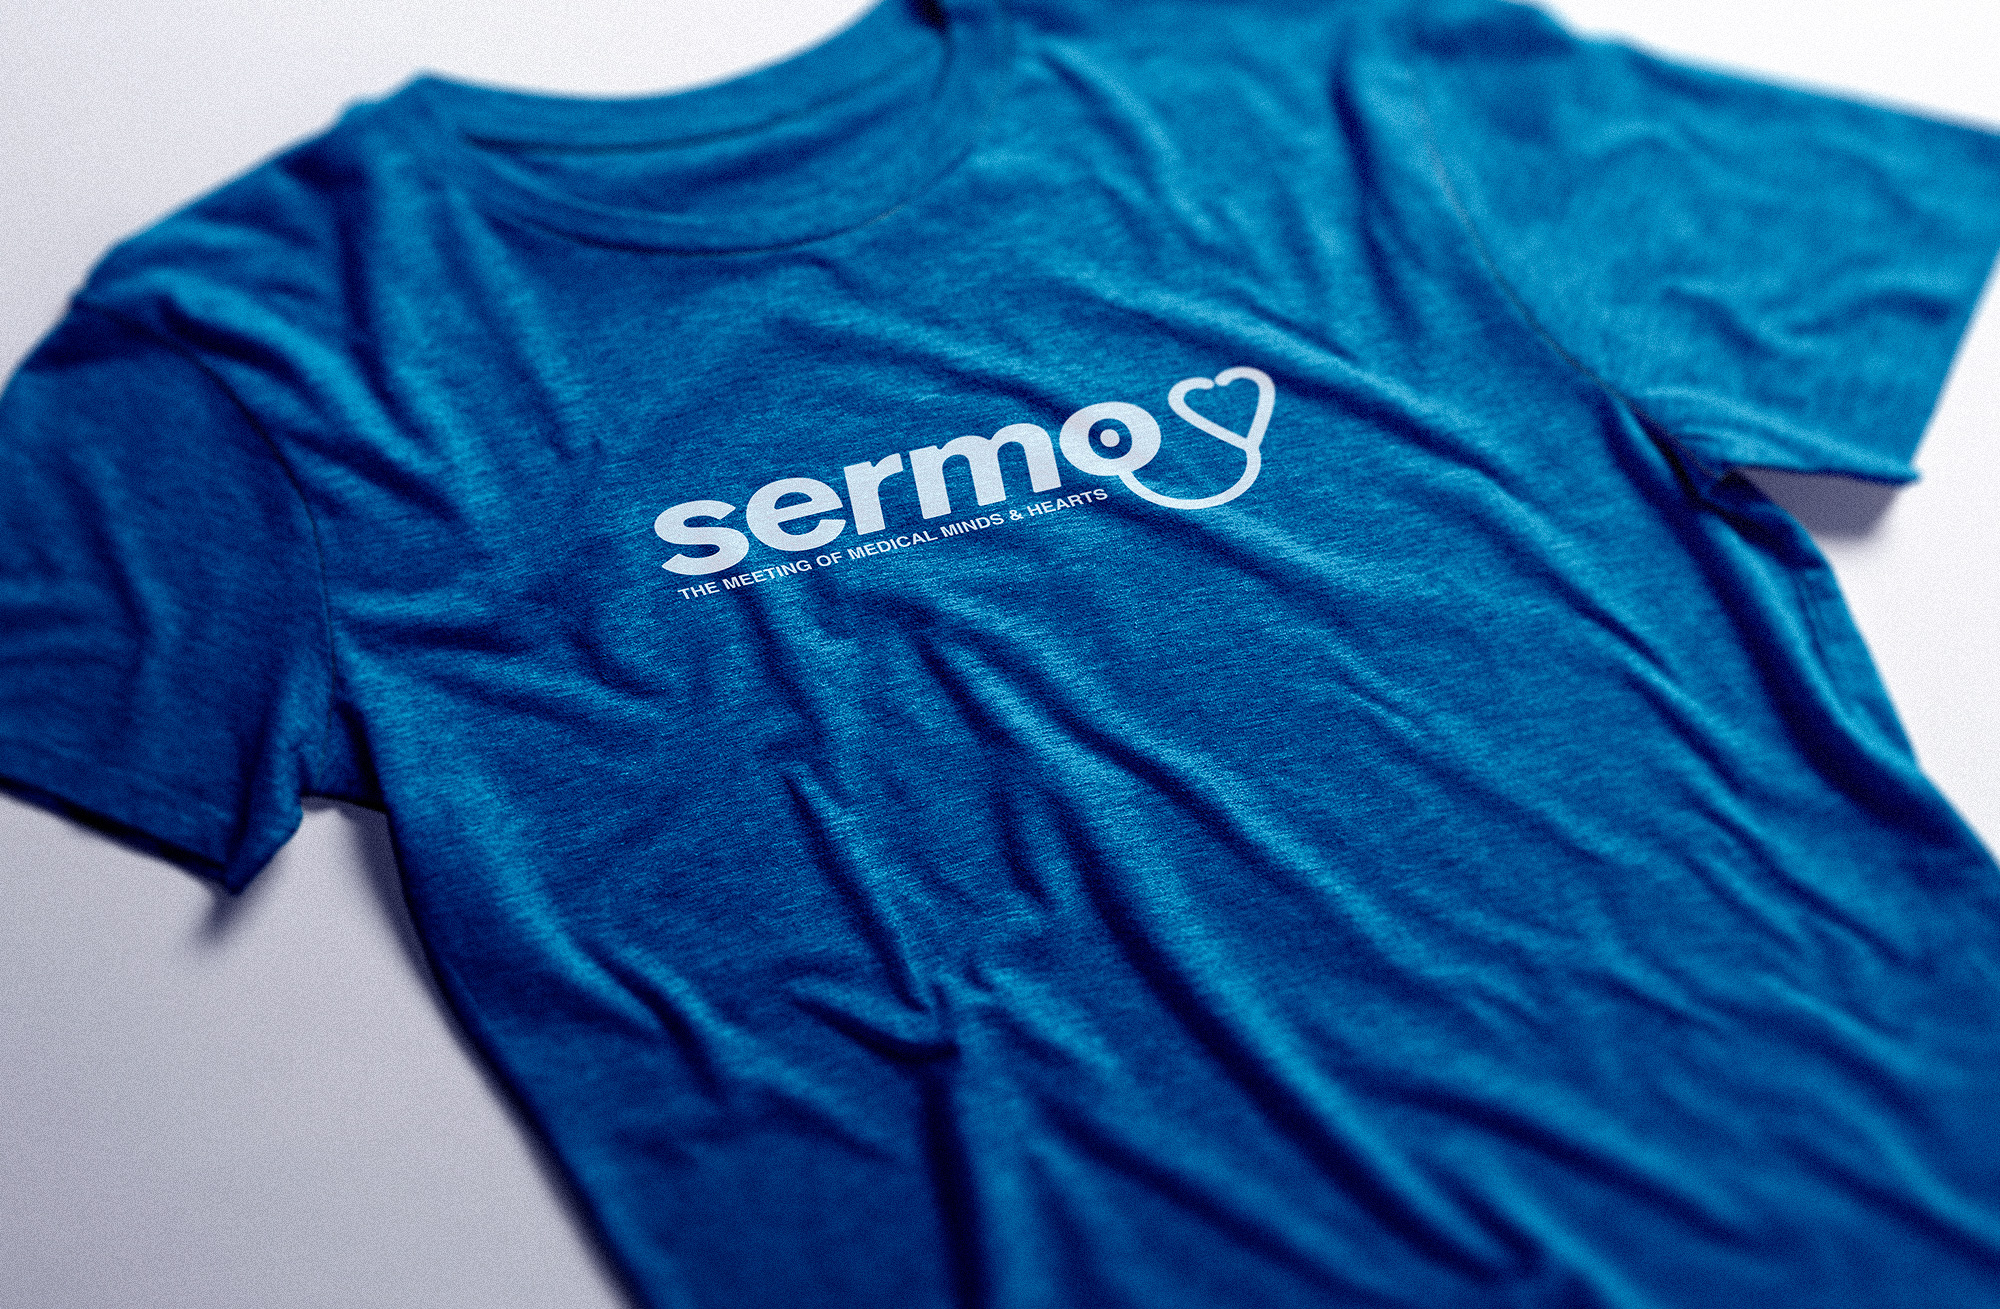 Sermo_Logo_TShirt